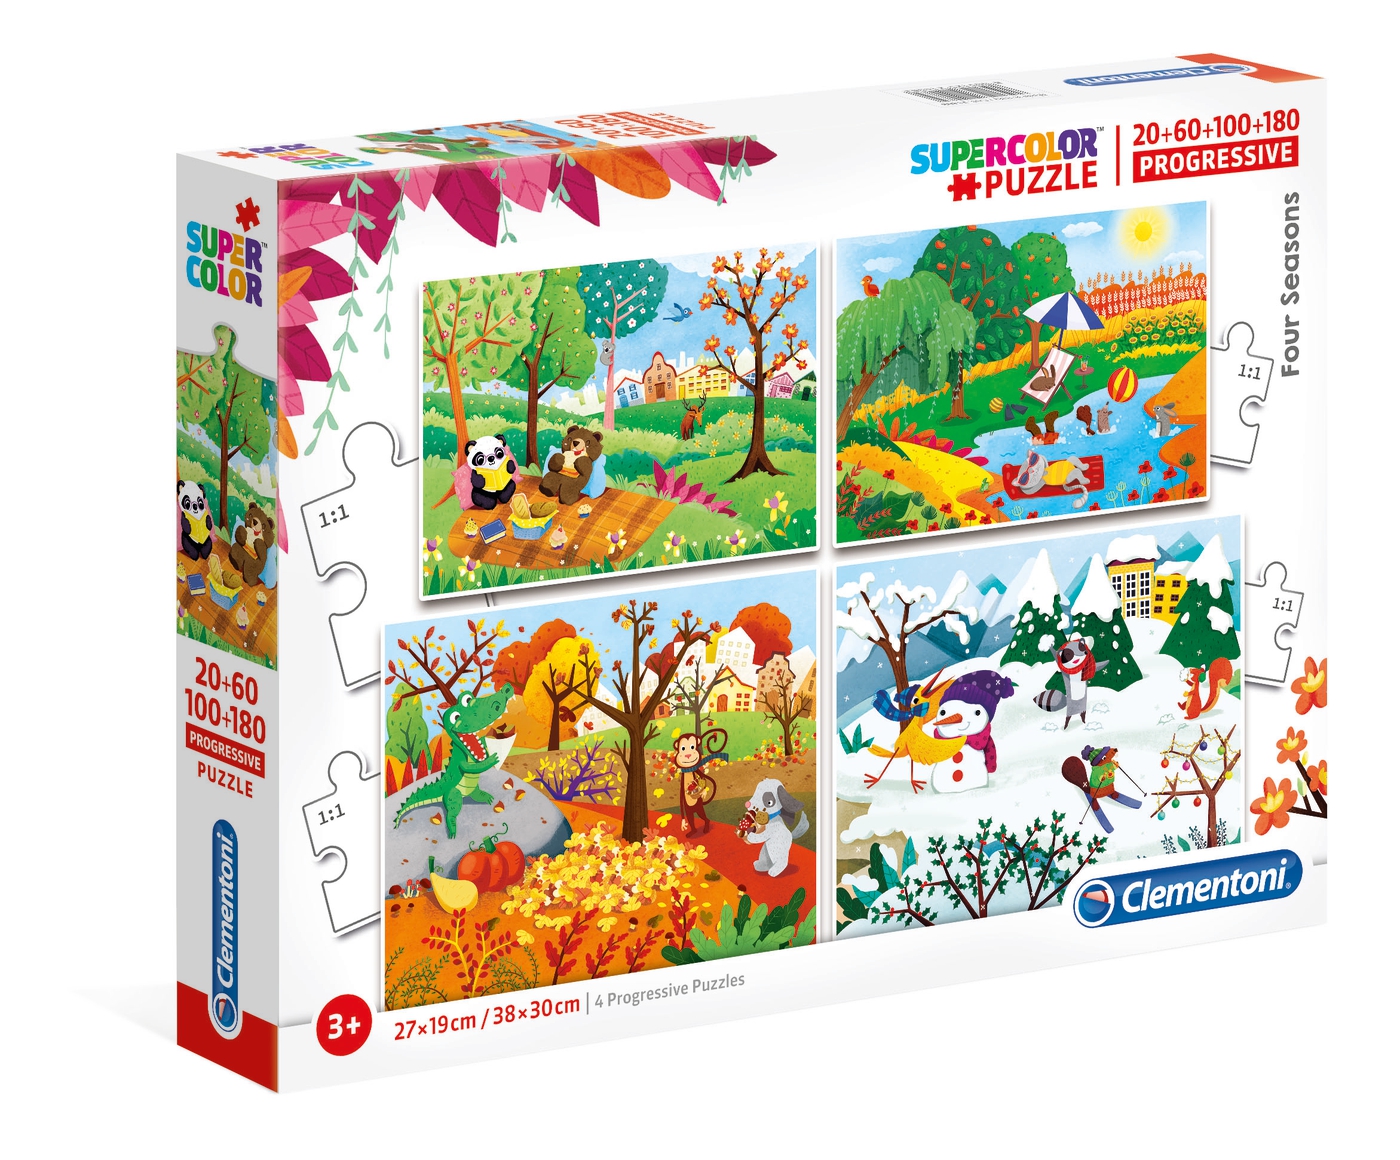 4 Seasons 60 100 180 Pcs Supercolor Puzzle Clementoni